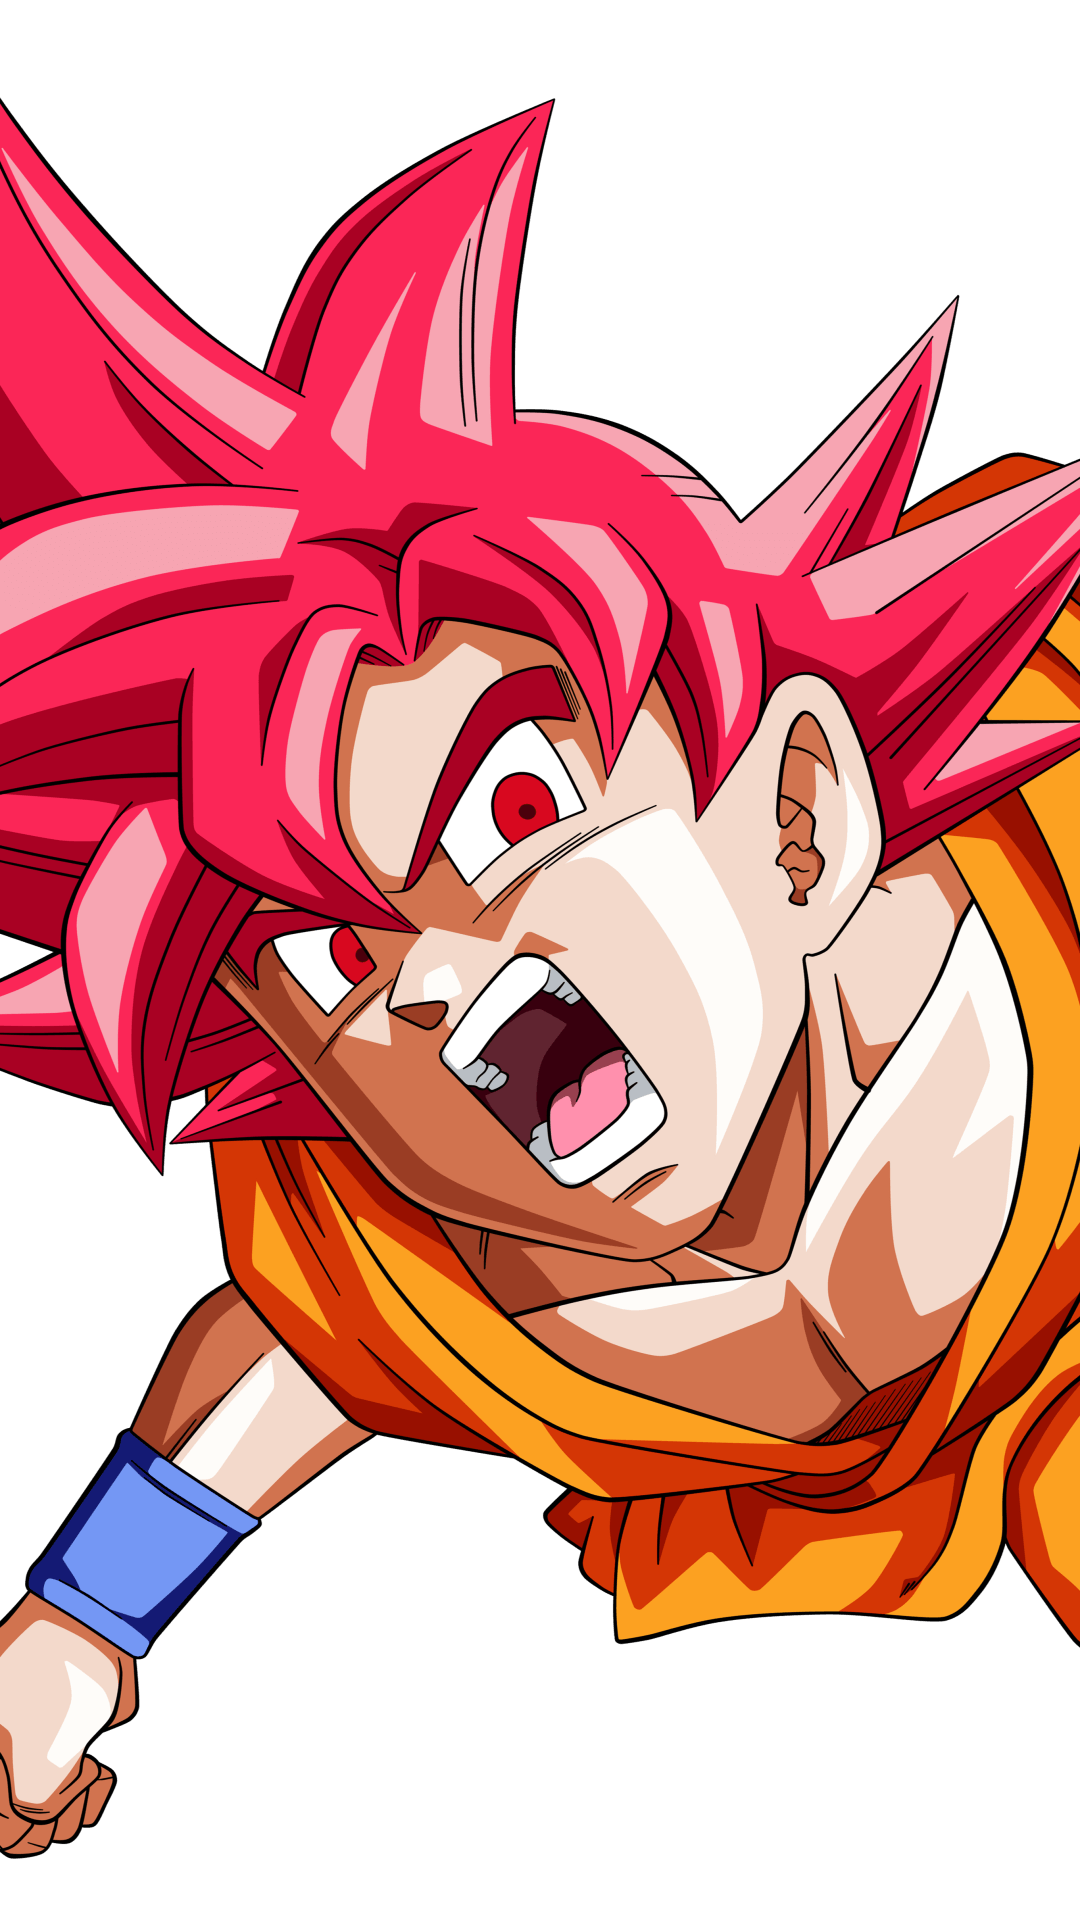 Goku Super Saiyan God Wallpapers - Top Free Goku Super ...